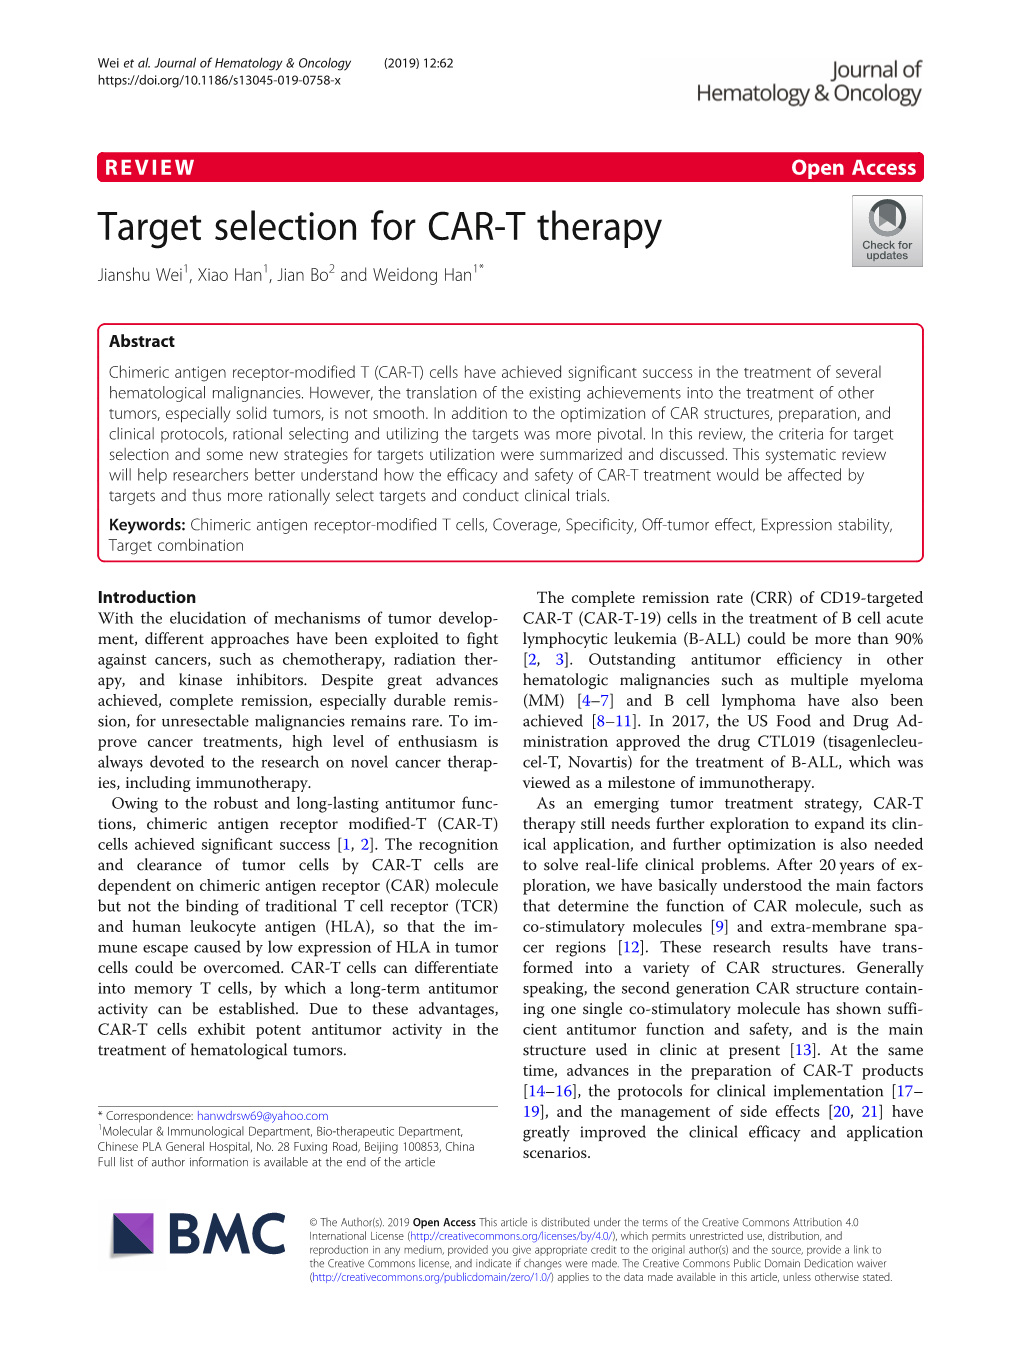 Target Selection for CAR-T Therapy Jianshu Wei1, Xiao Han1, Jian Bo2 and Weidong Han1*